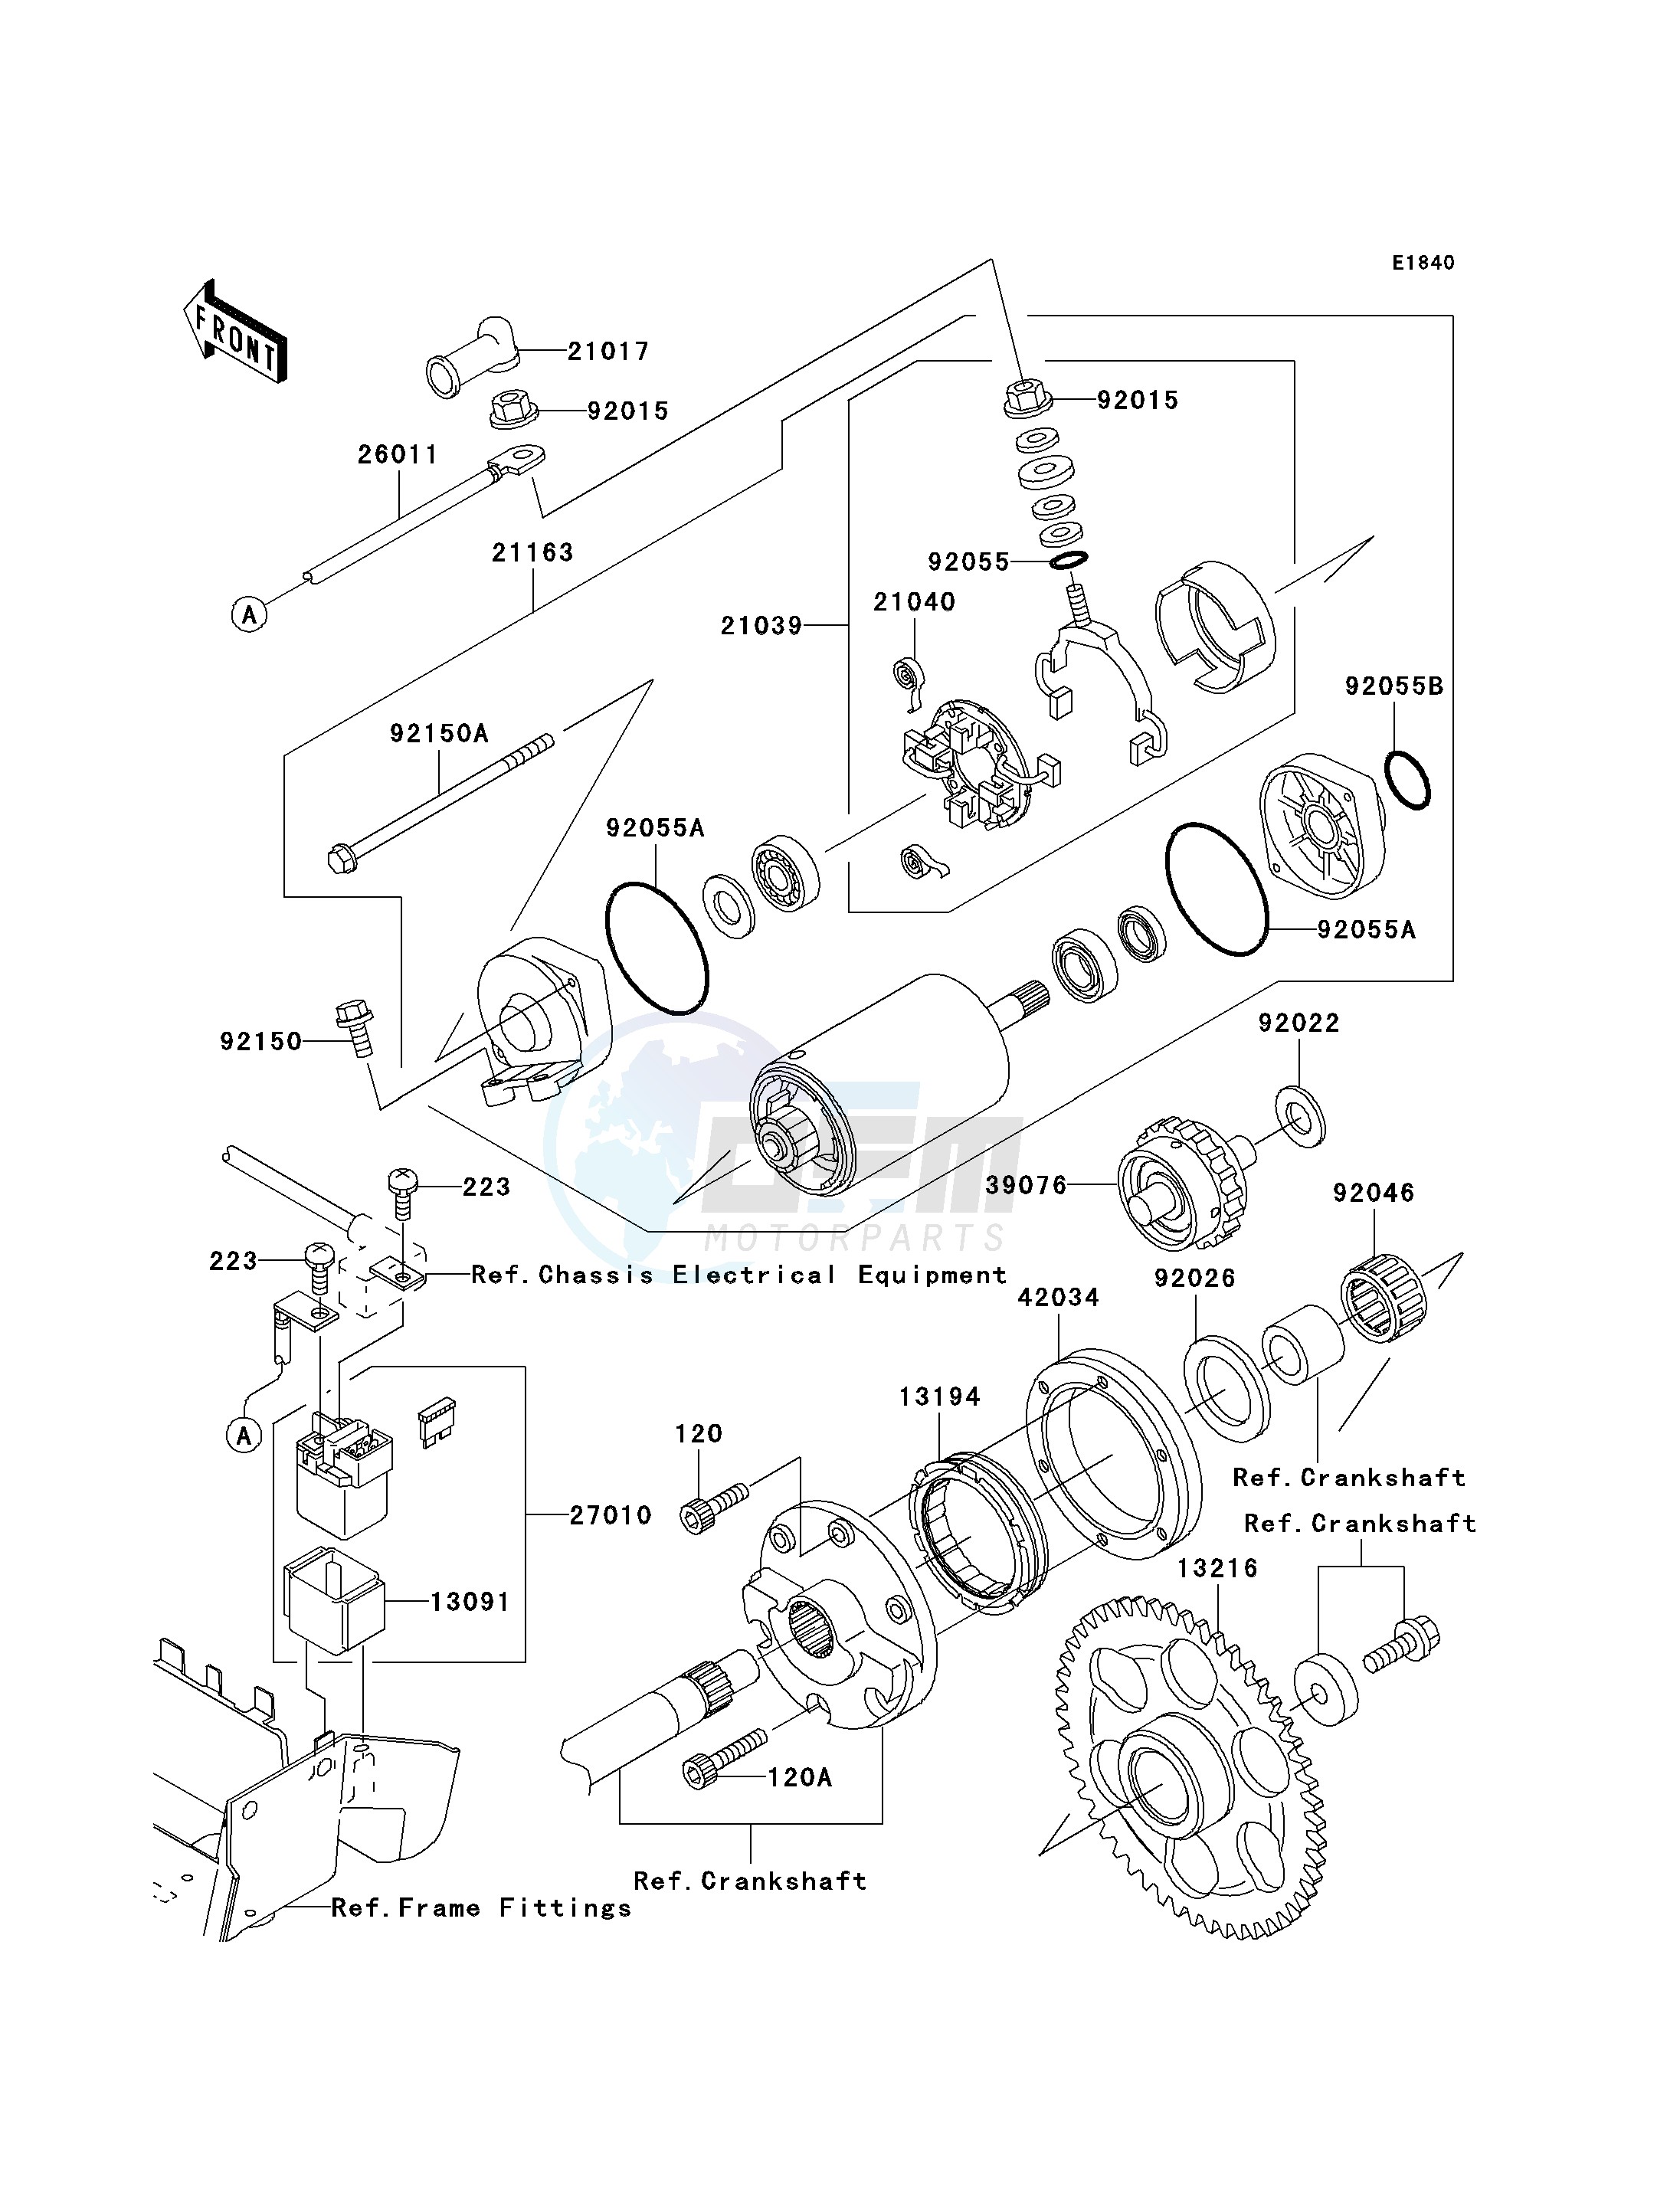 STARTER MOTOR blueprint